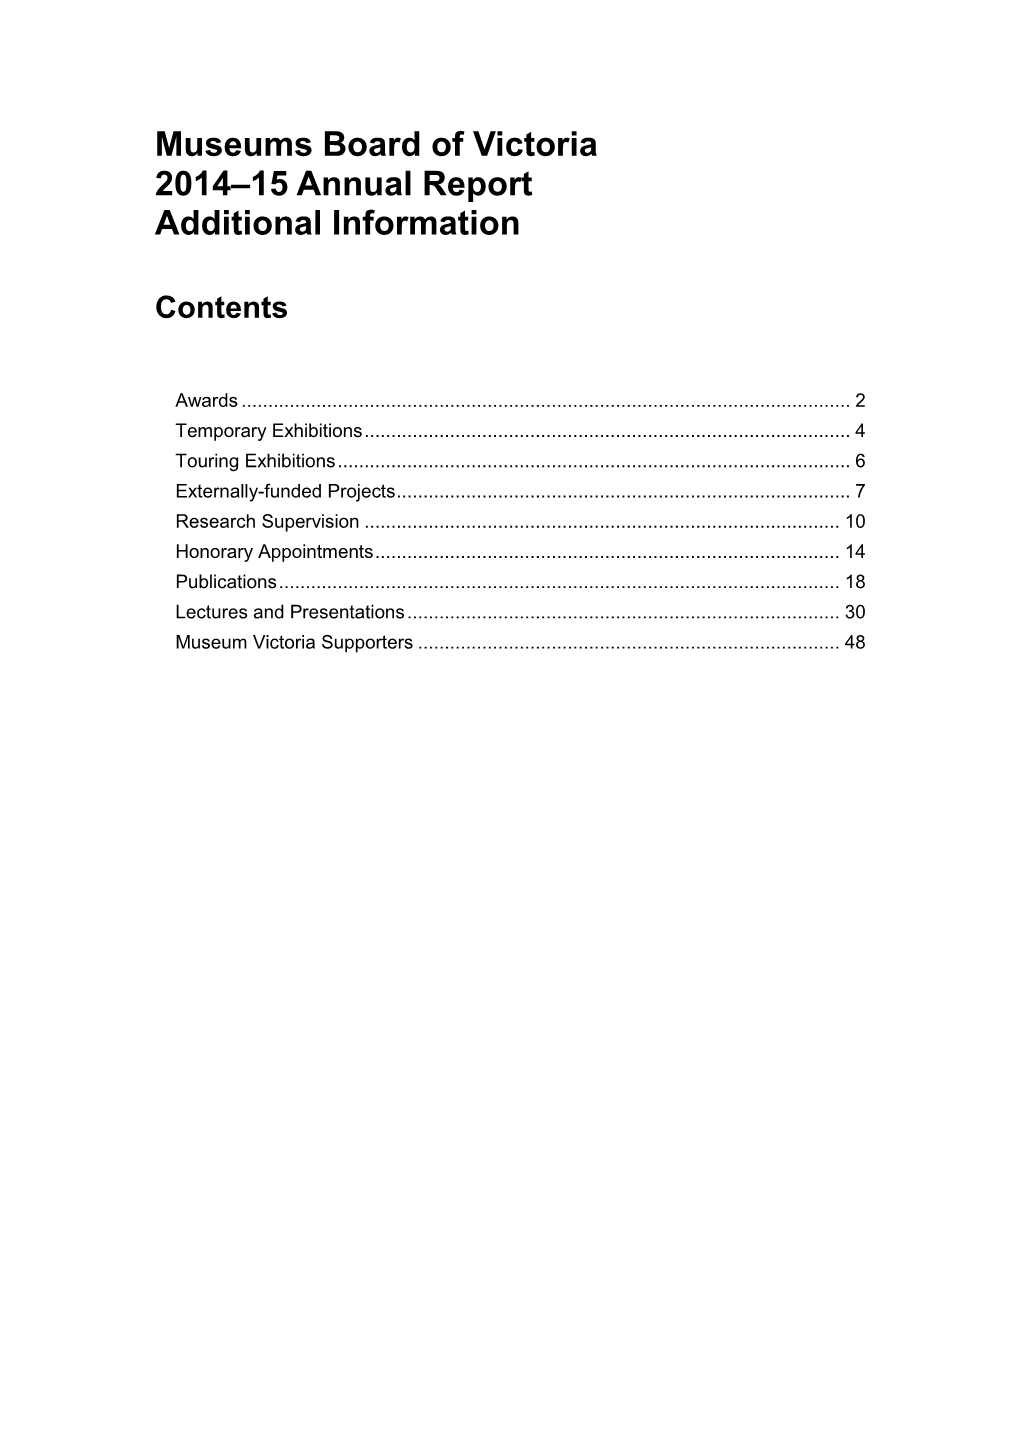 Additional Information 2014–2015 564.1KB .Pdf File